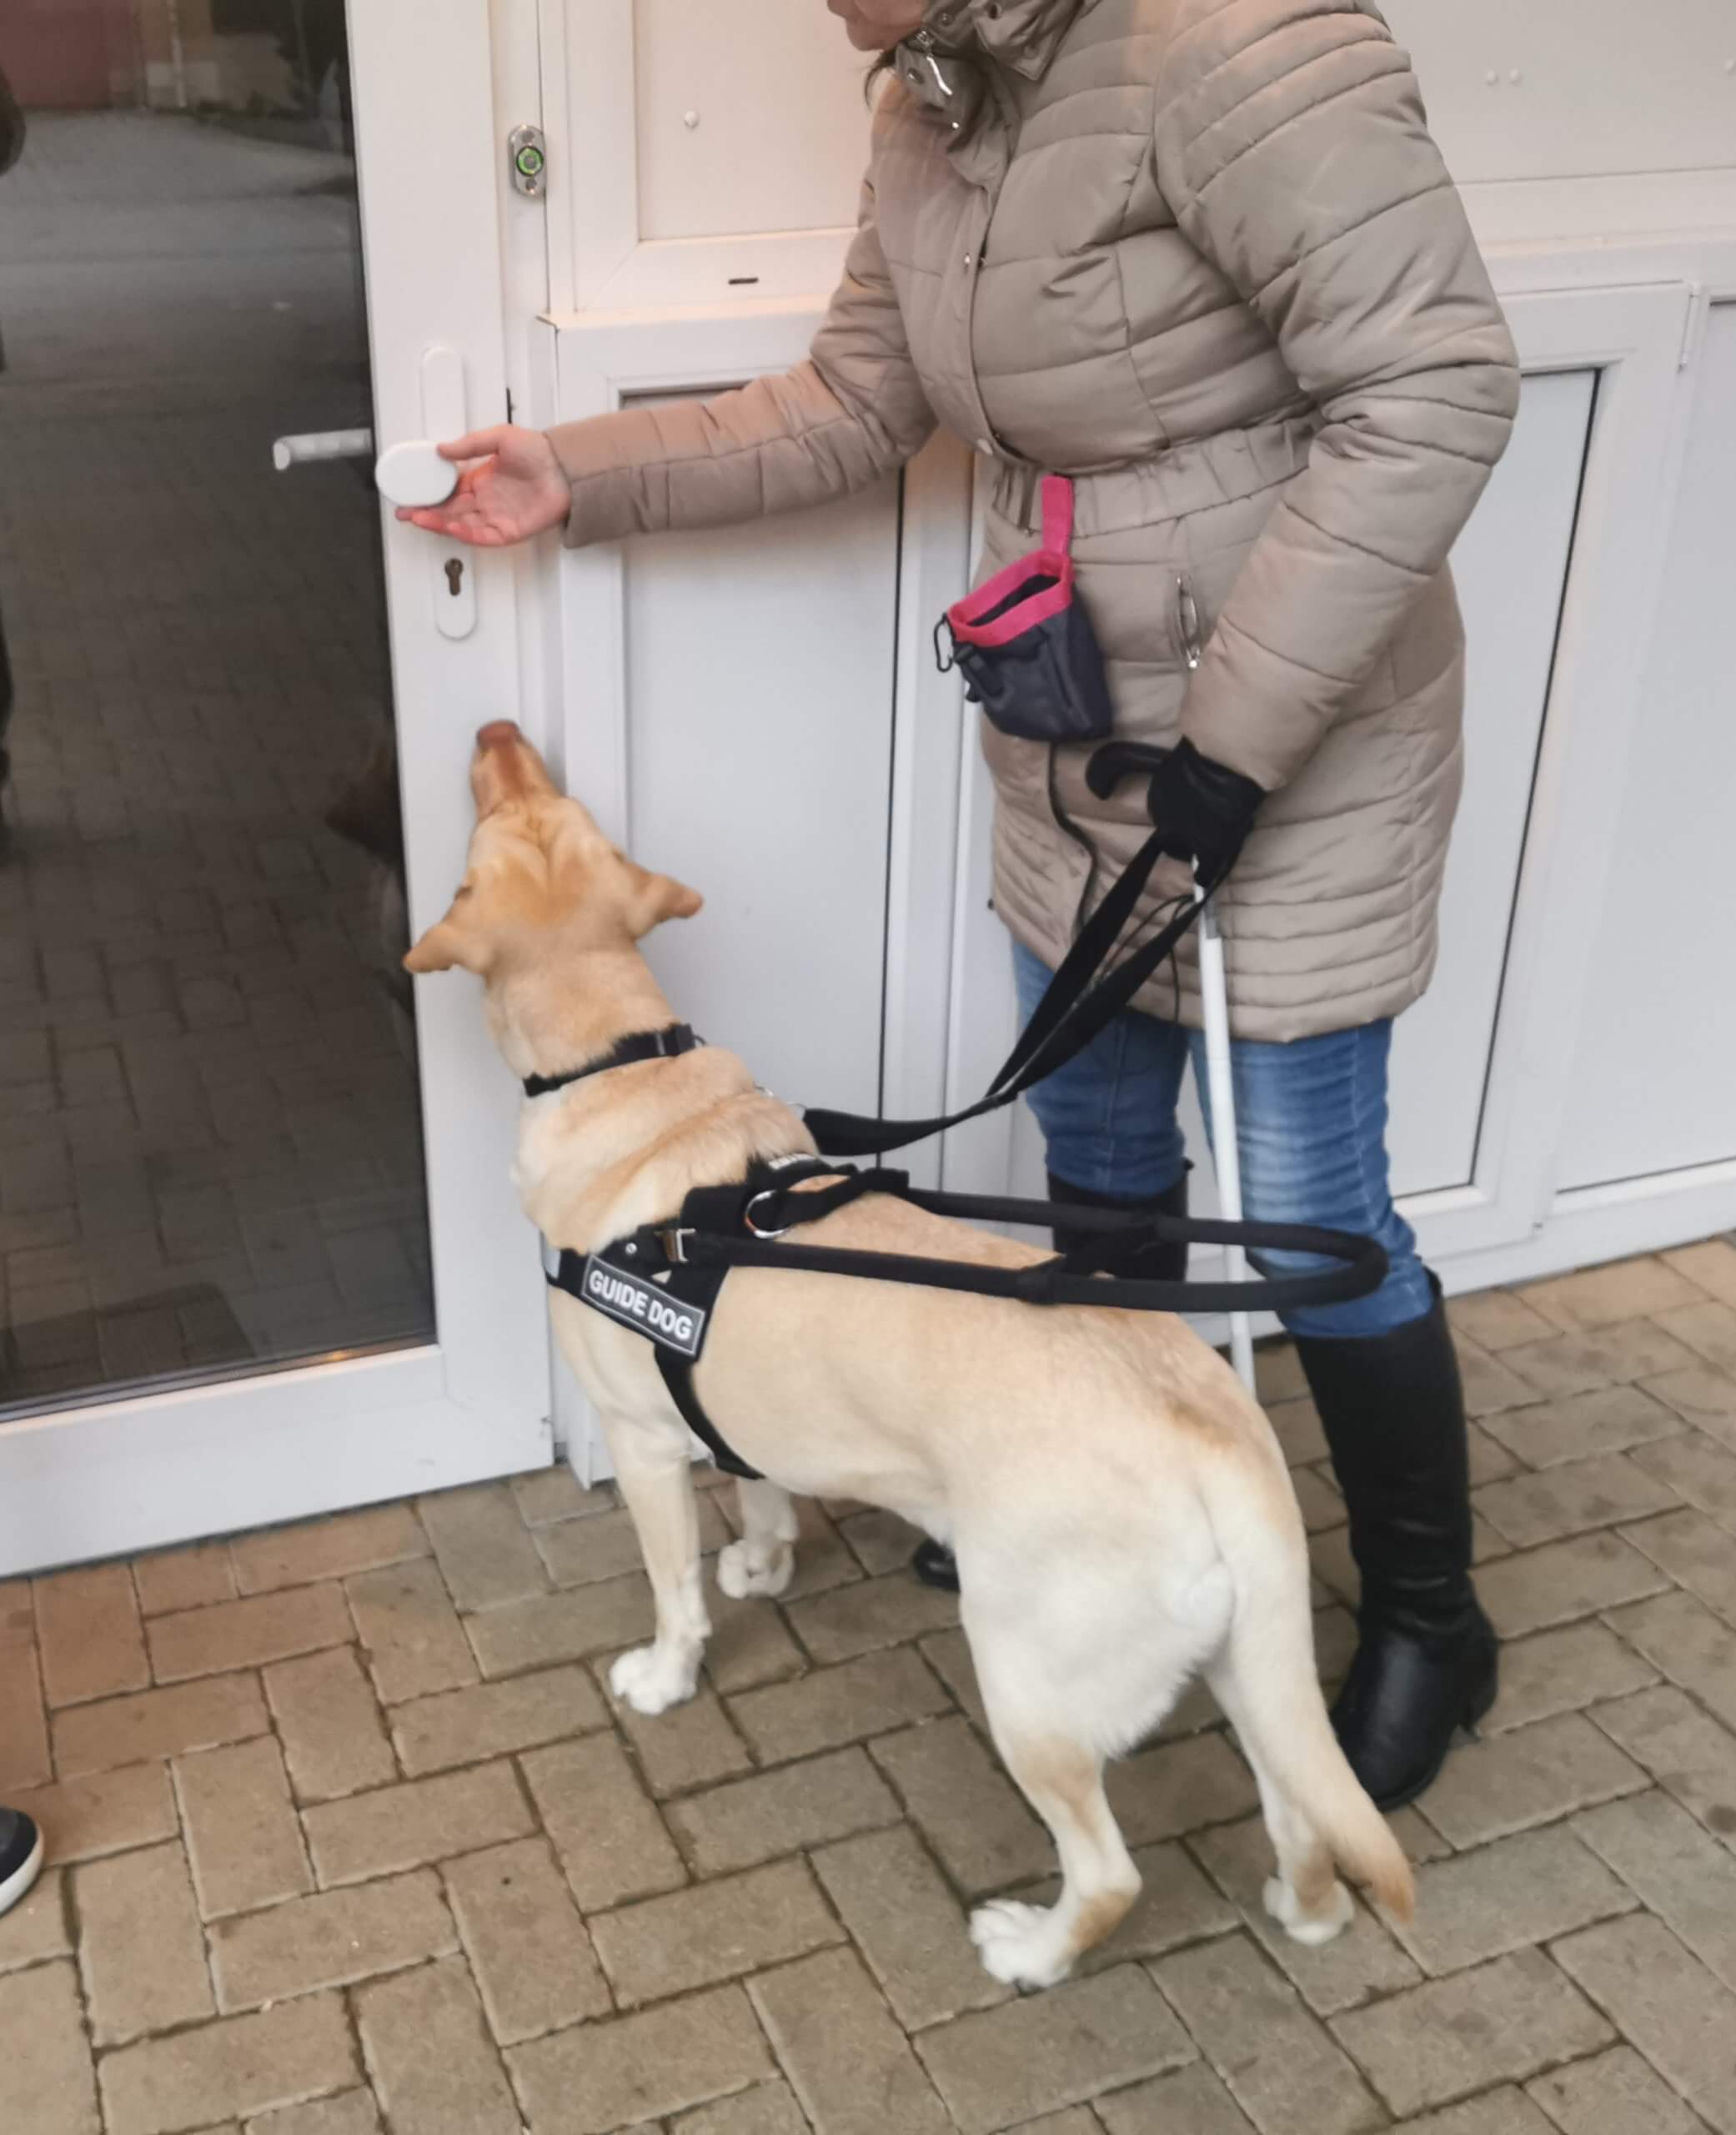 Vodiaci pes ukazuje klientke dver.